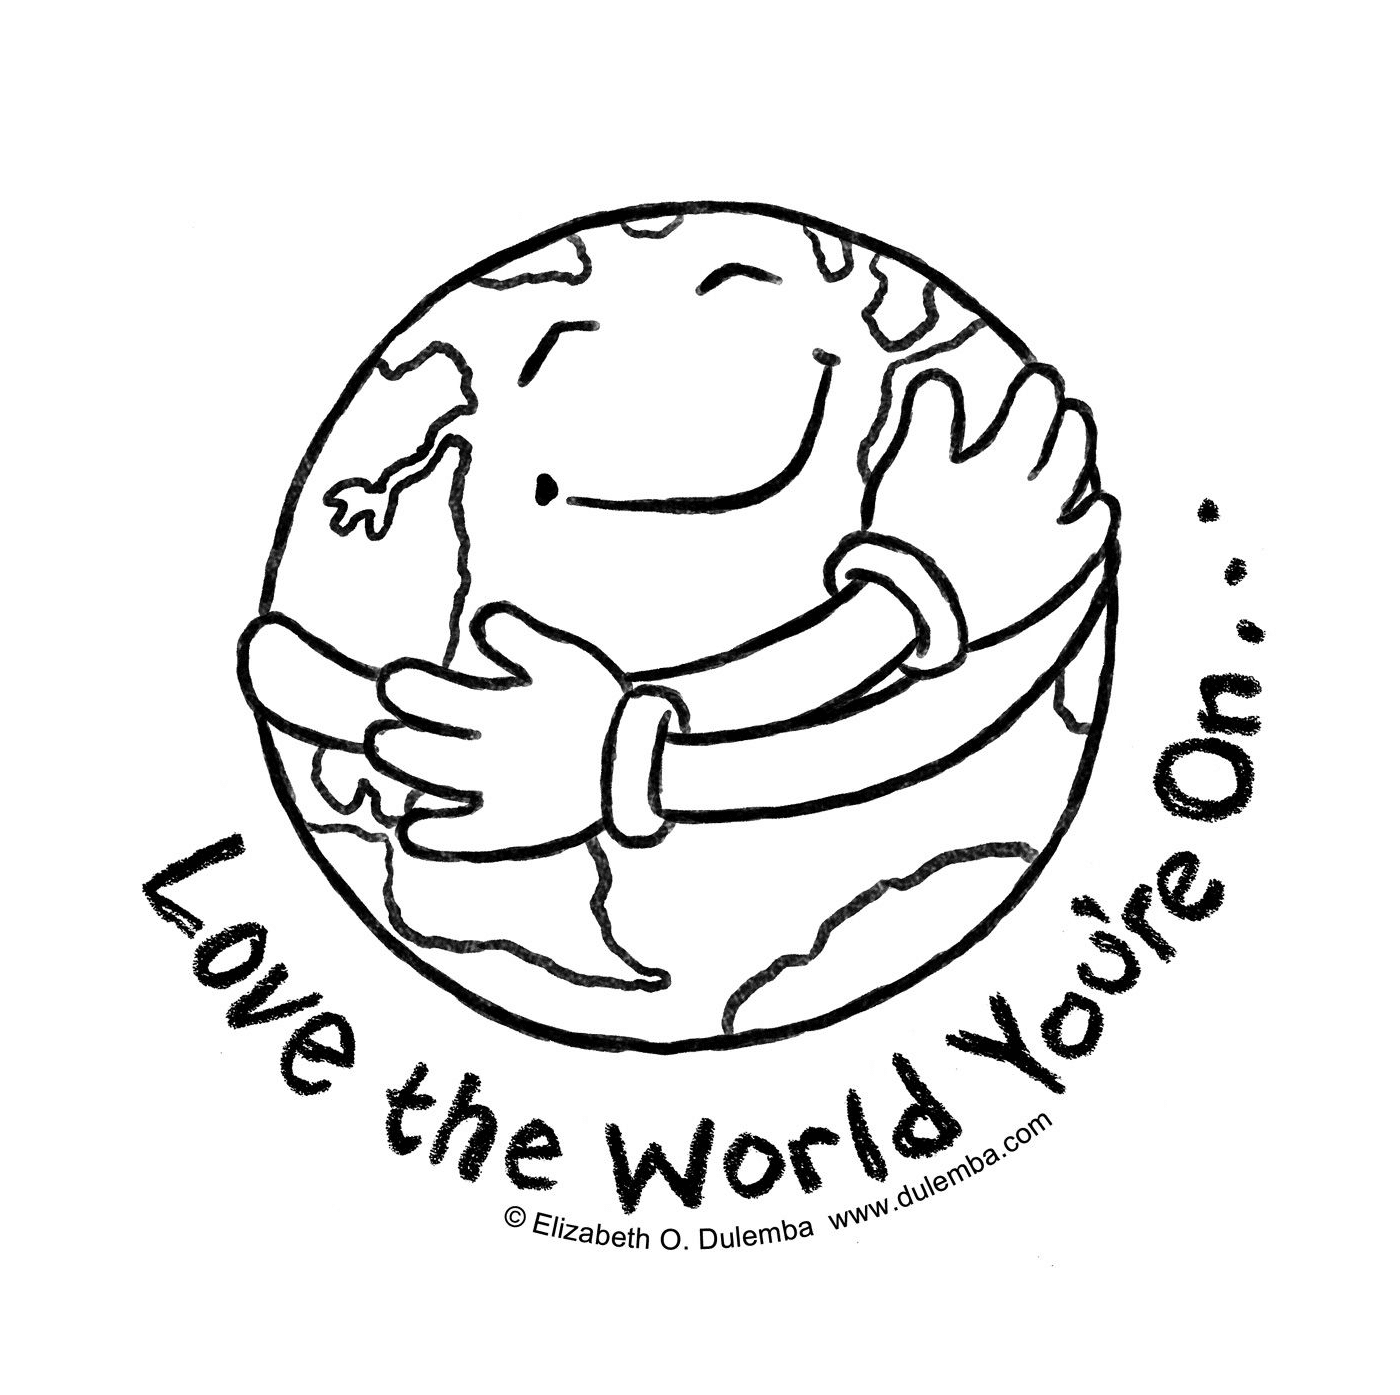   Journée de la Terre, aimons notre monde 